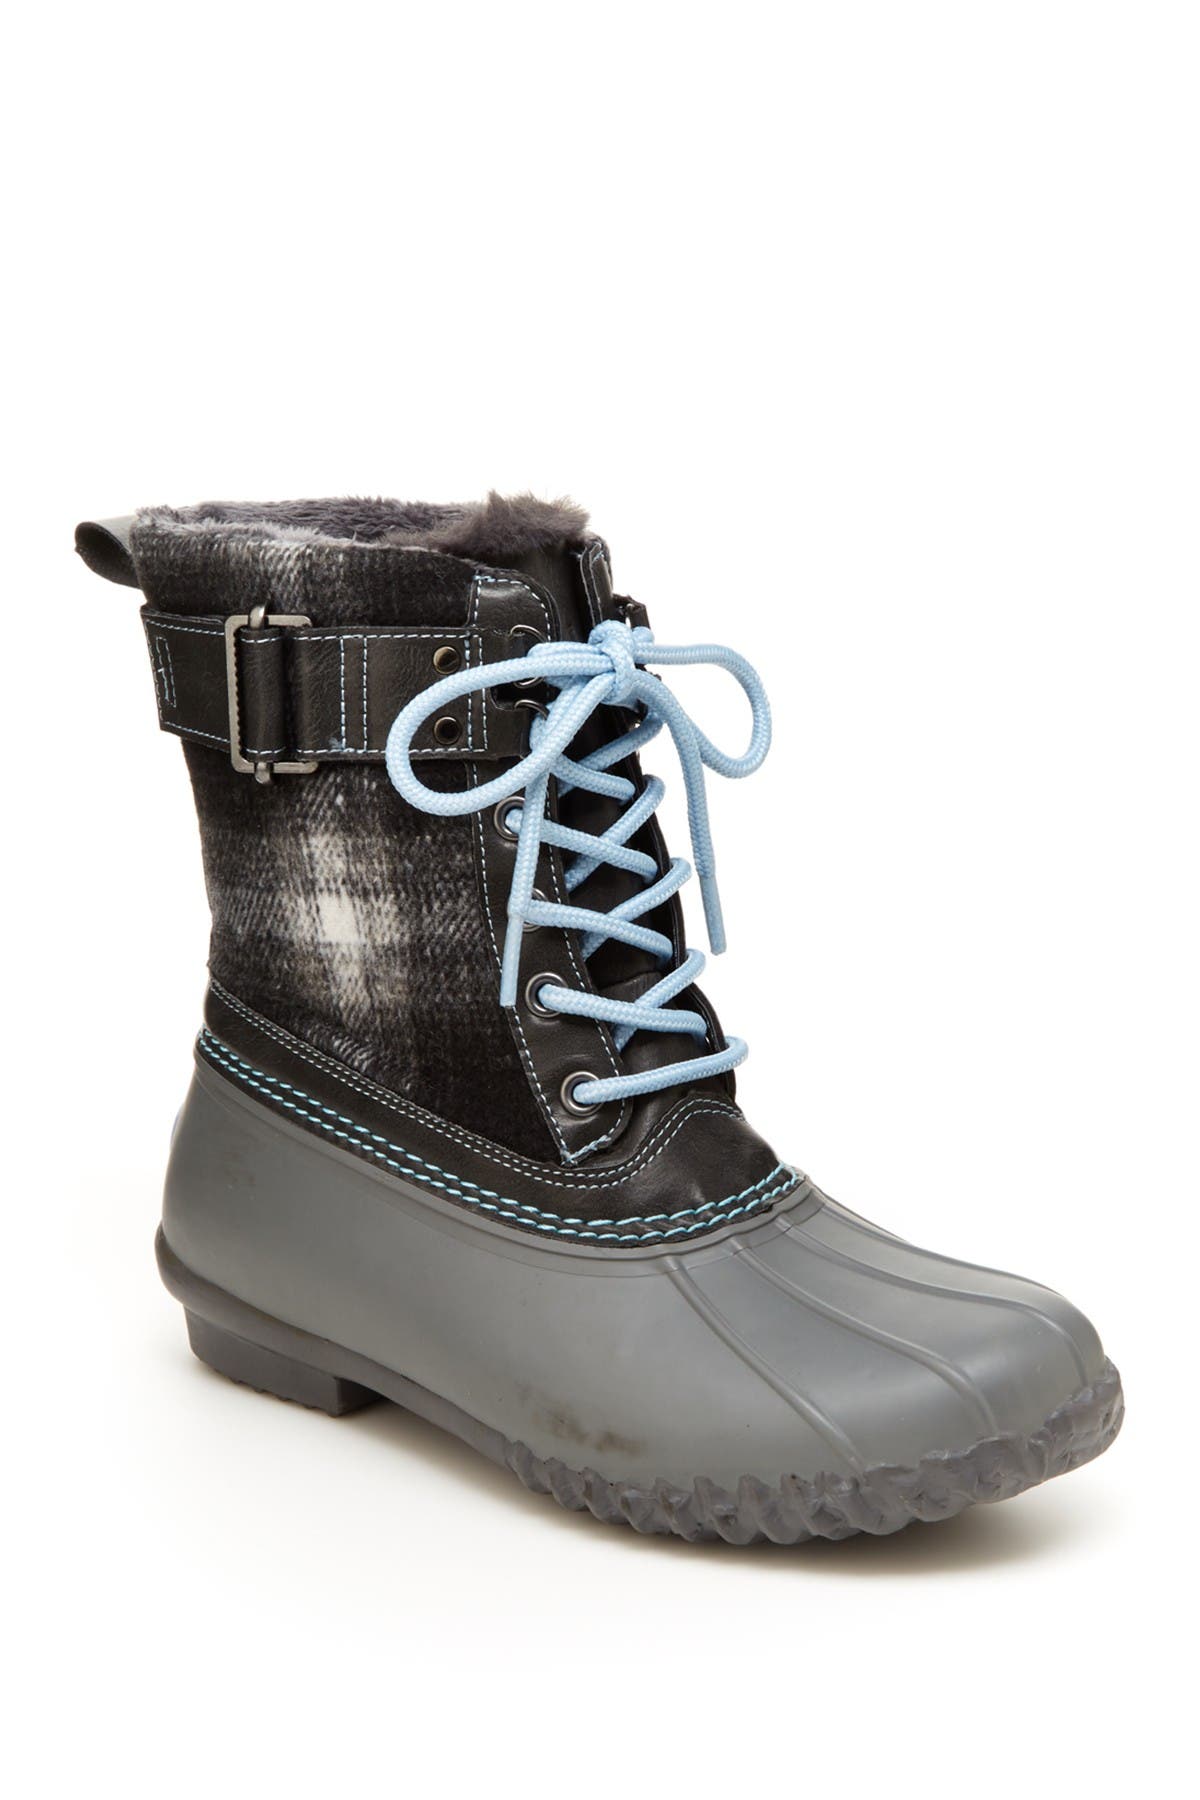 jbu boots waterproof